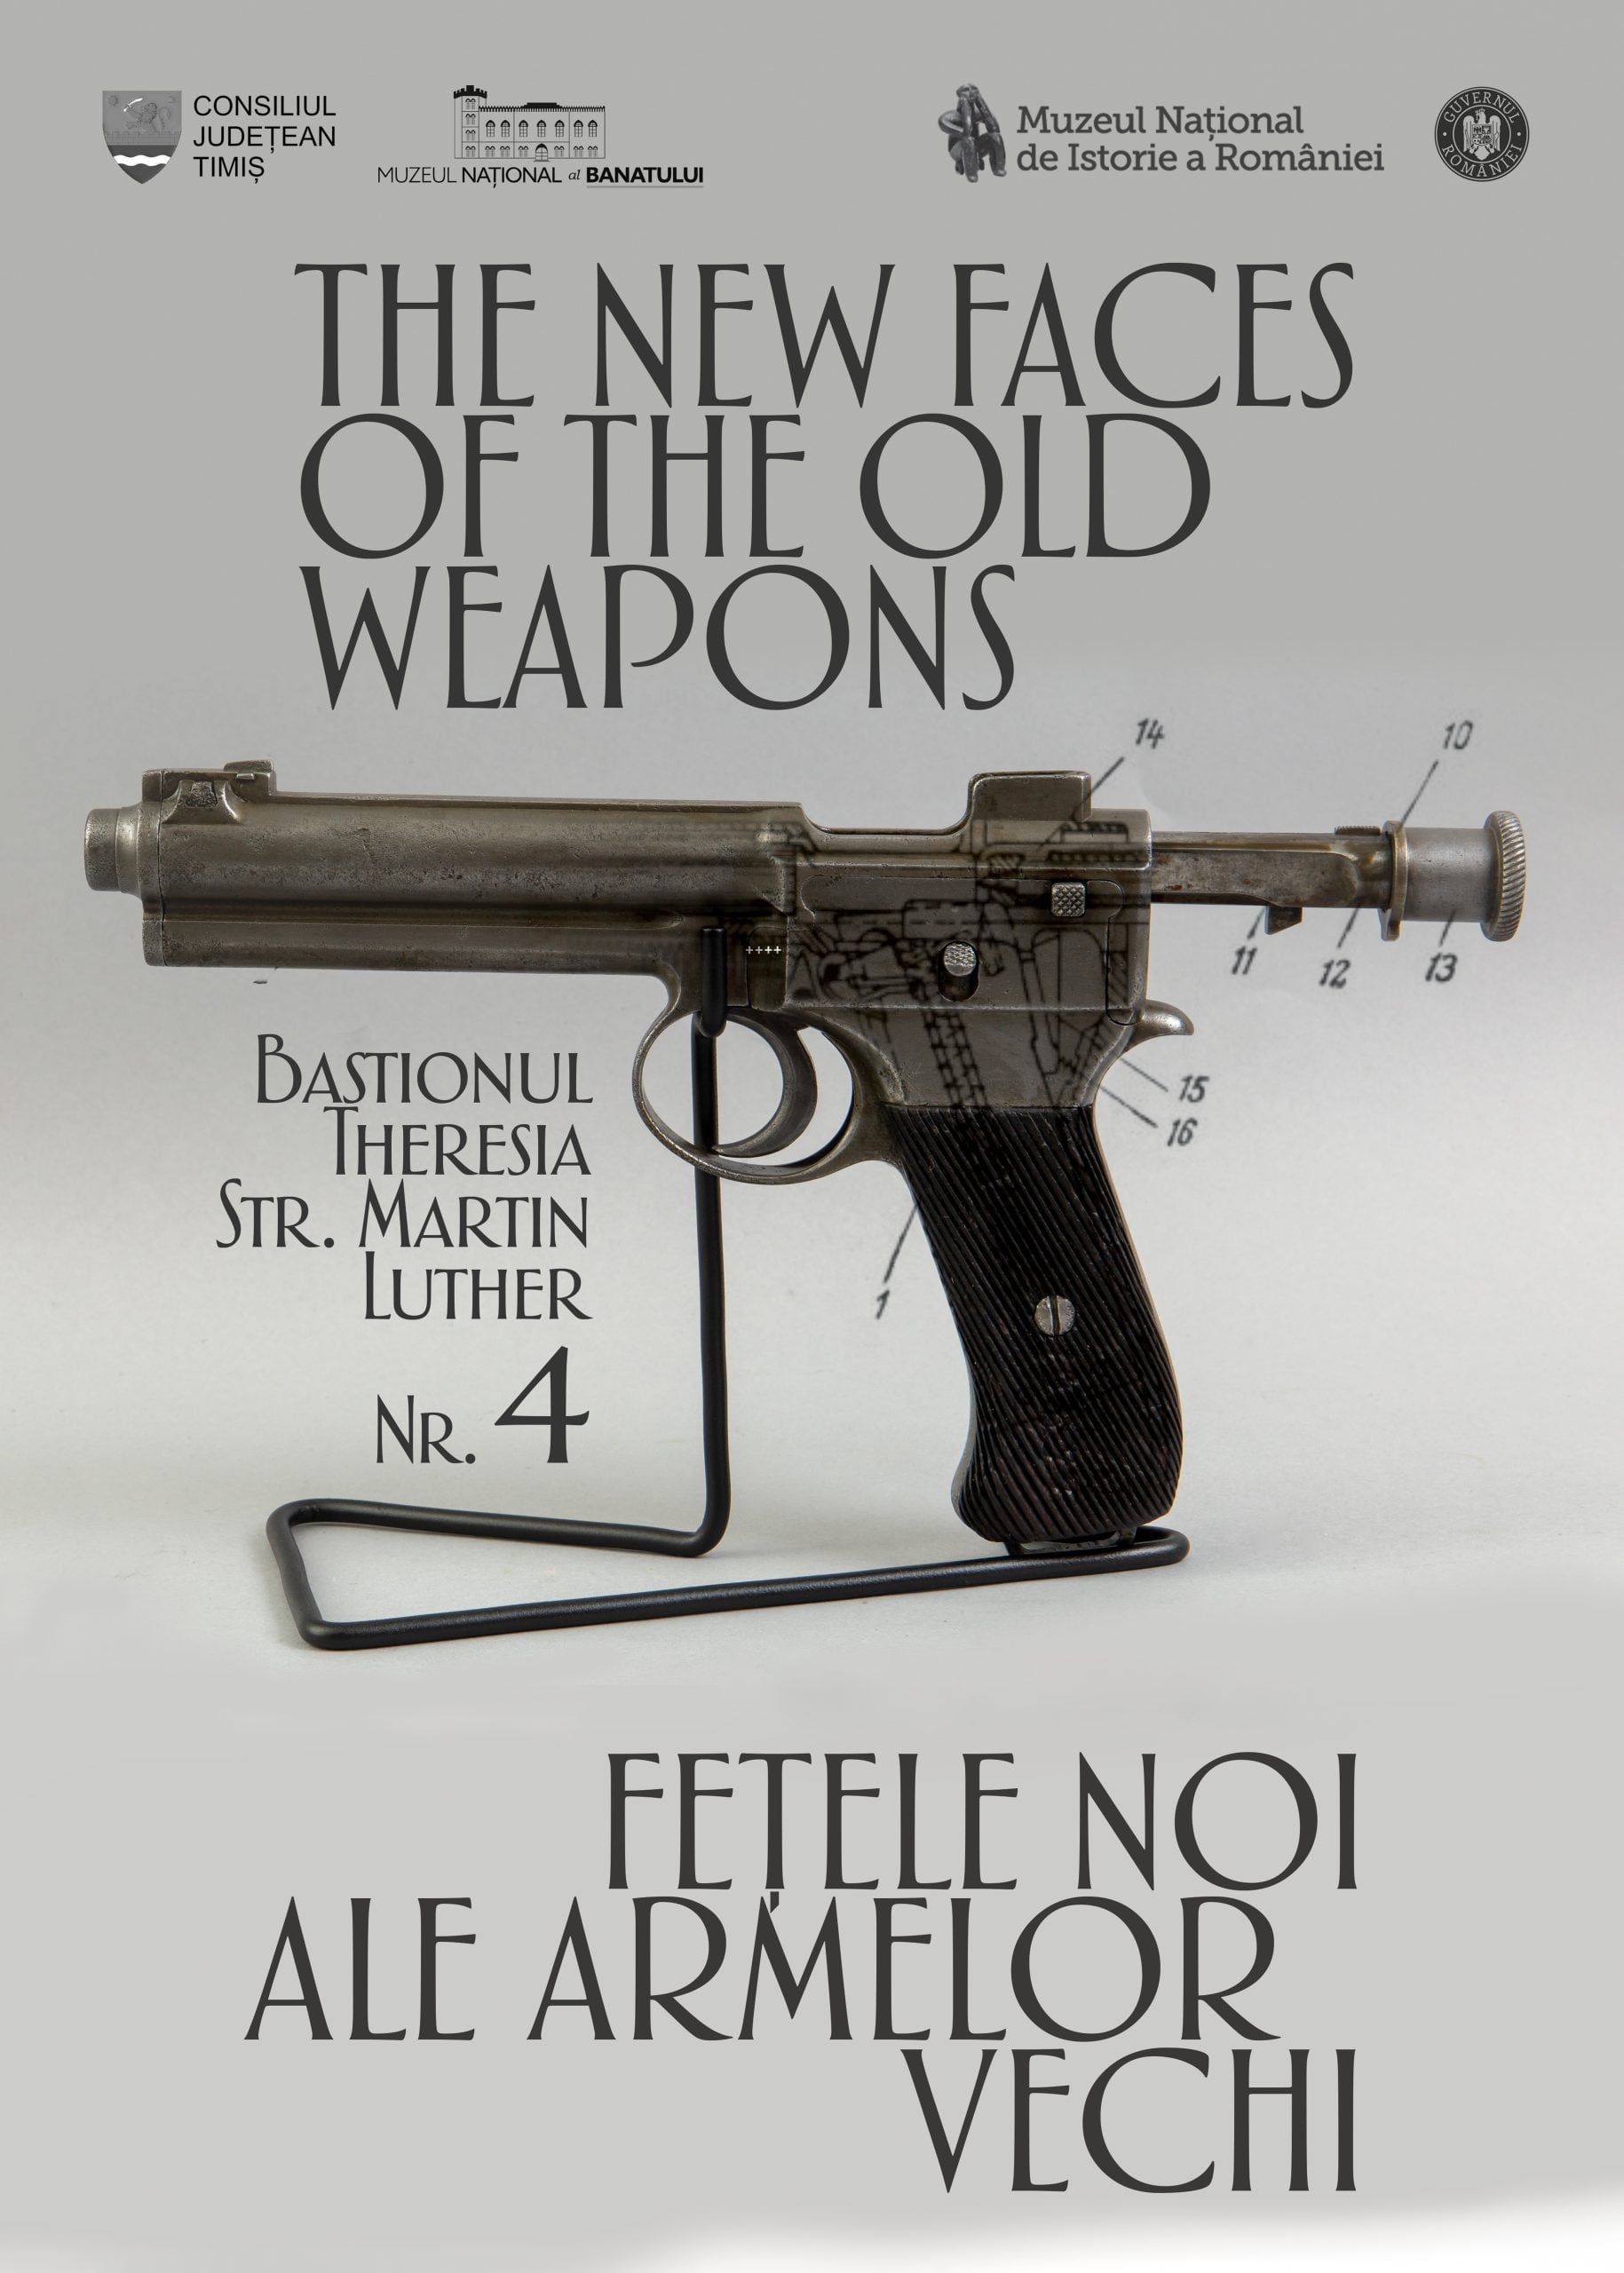 Deschiderea expoziției itinerante „Fețele noi ale armelor vechi ” la Muzeul Național al Banatului din Timișoara